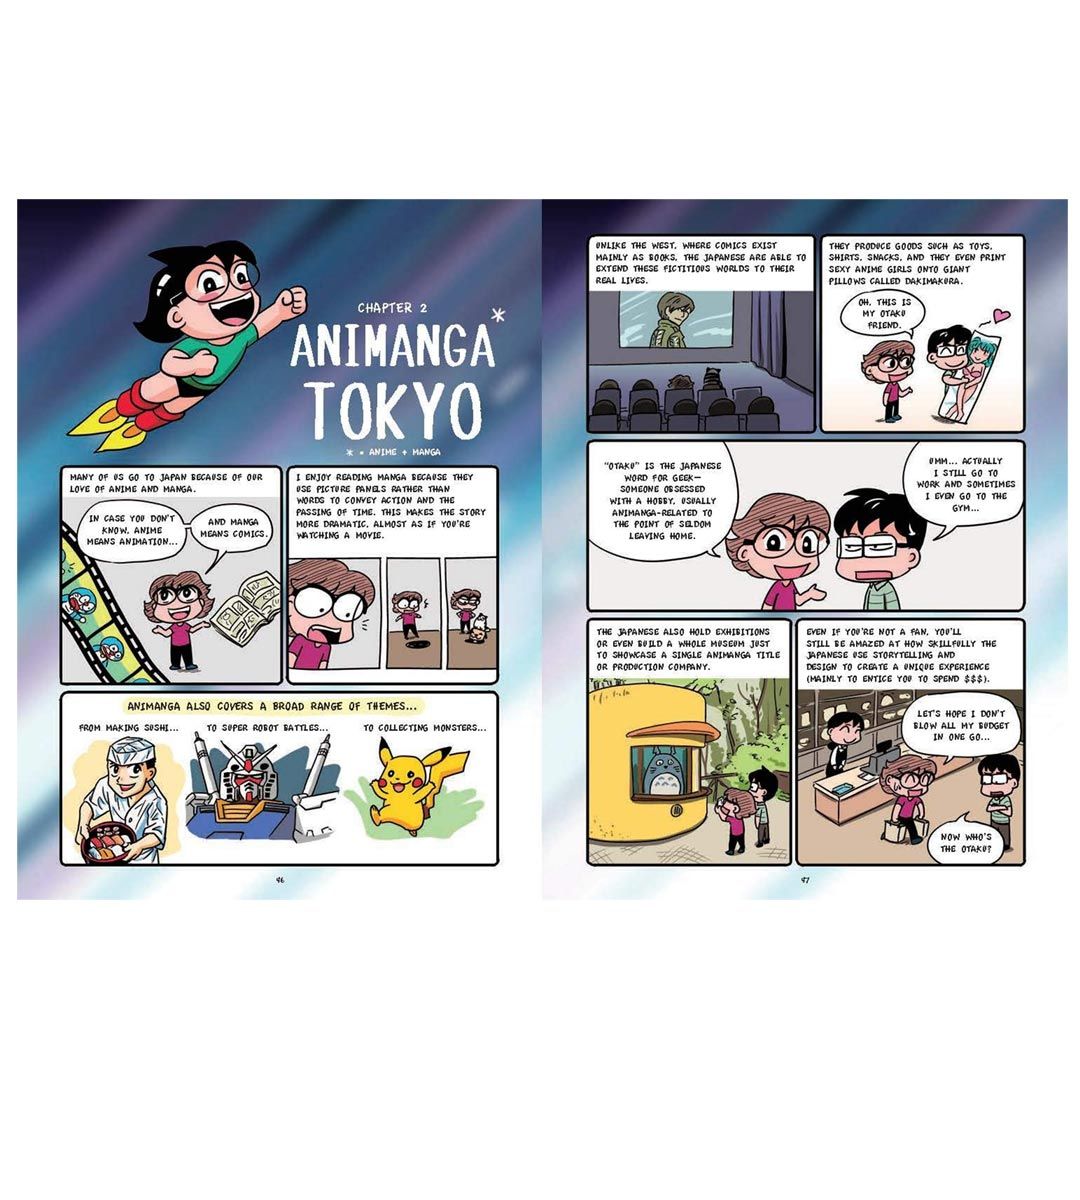 Viajes de Tokio de un amante del manga